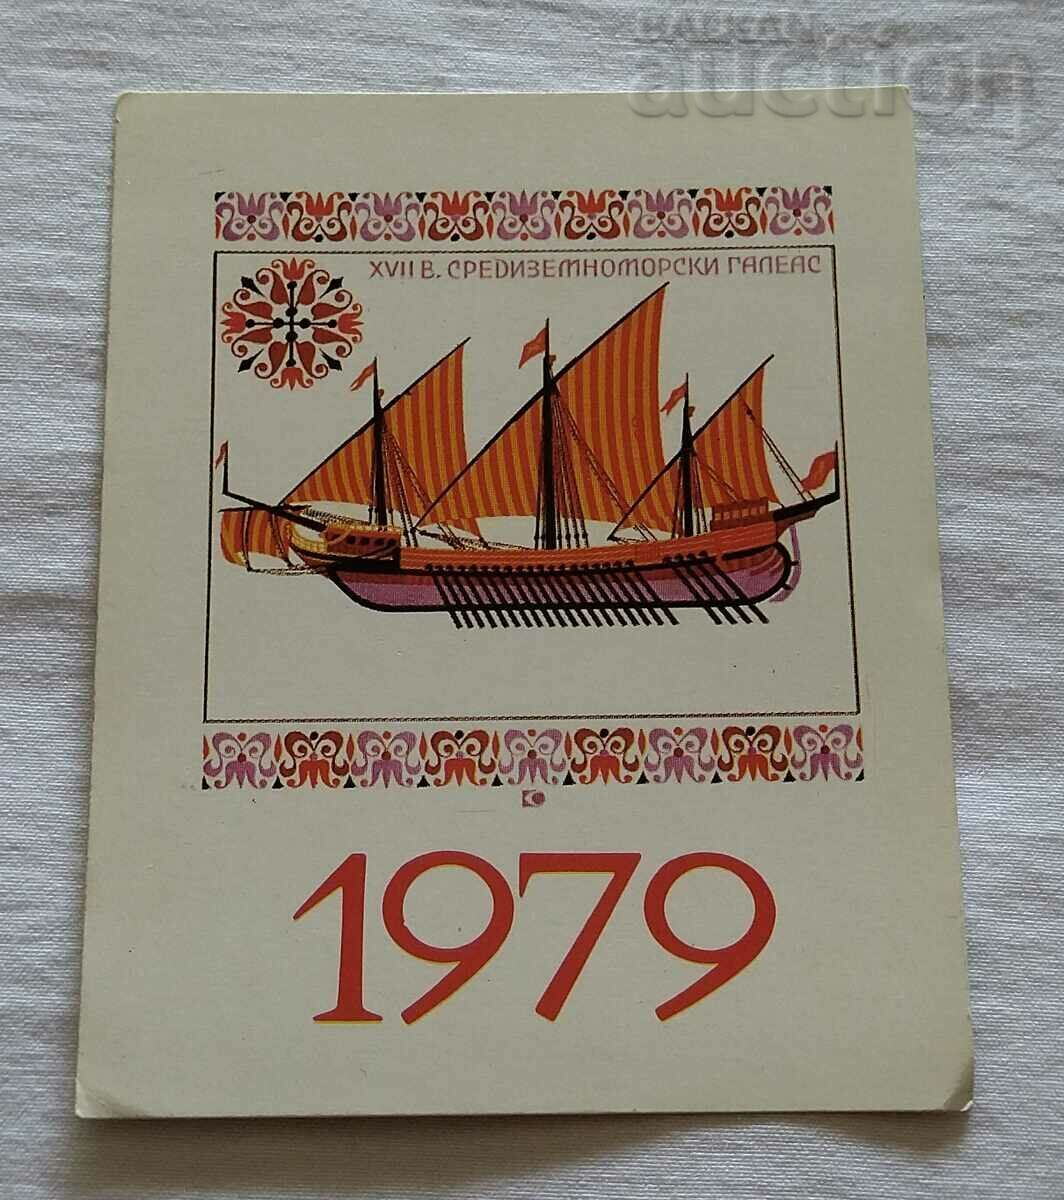 GALELE MEDITERRANEANE CALENDARUL secolului al XVII-lea 1979